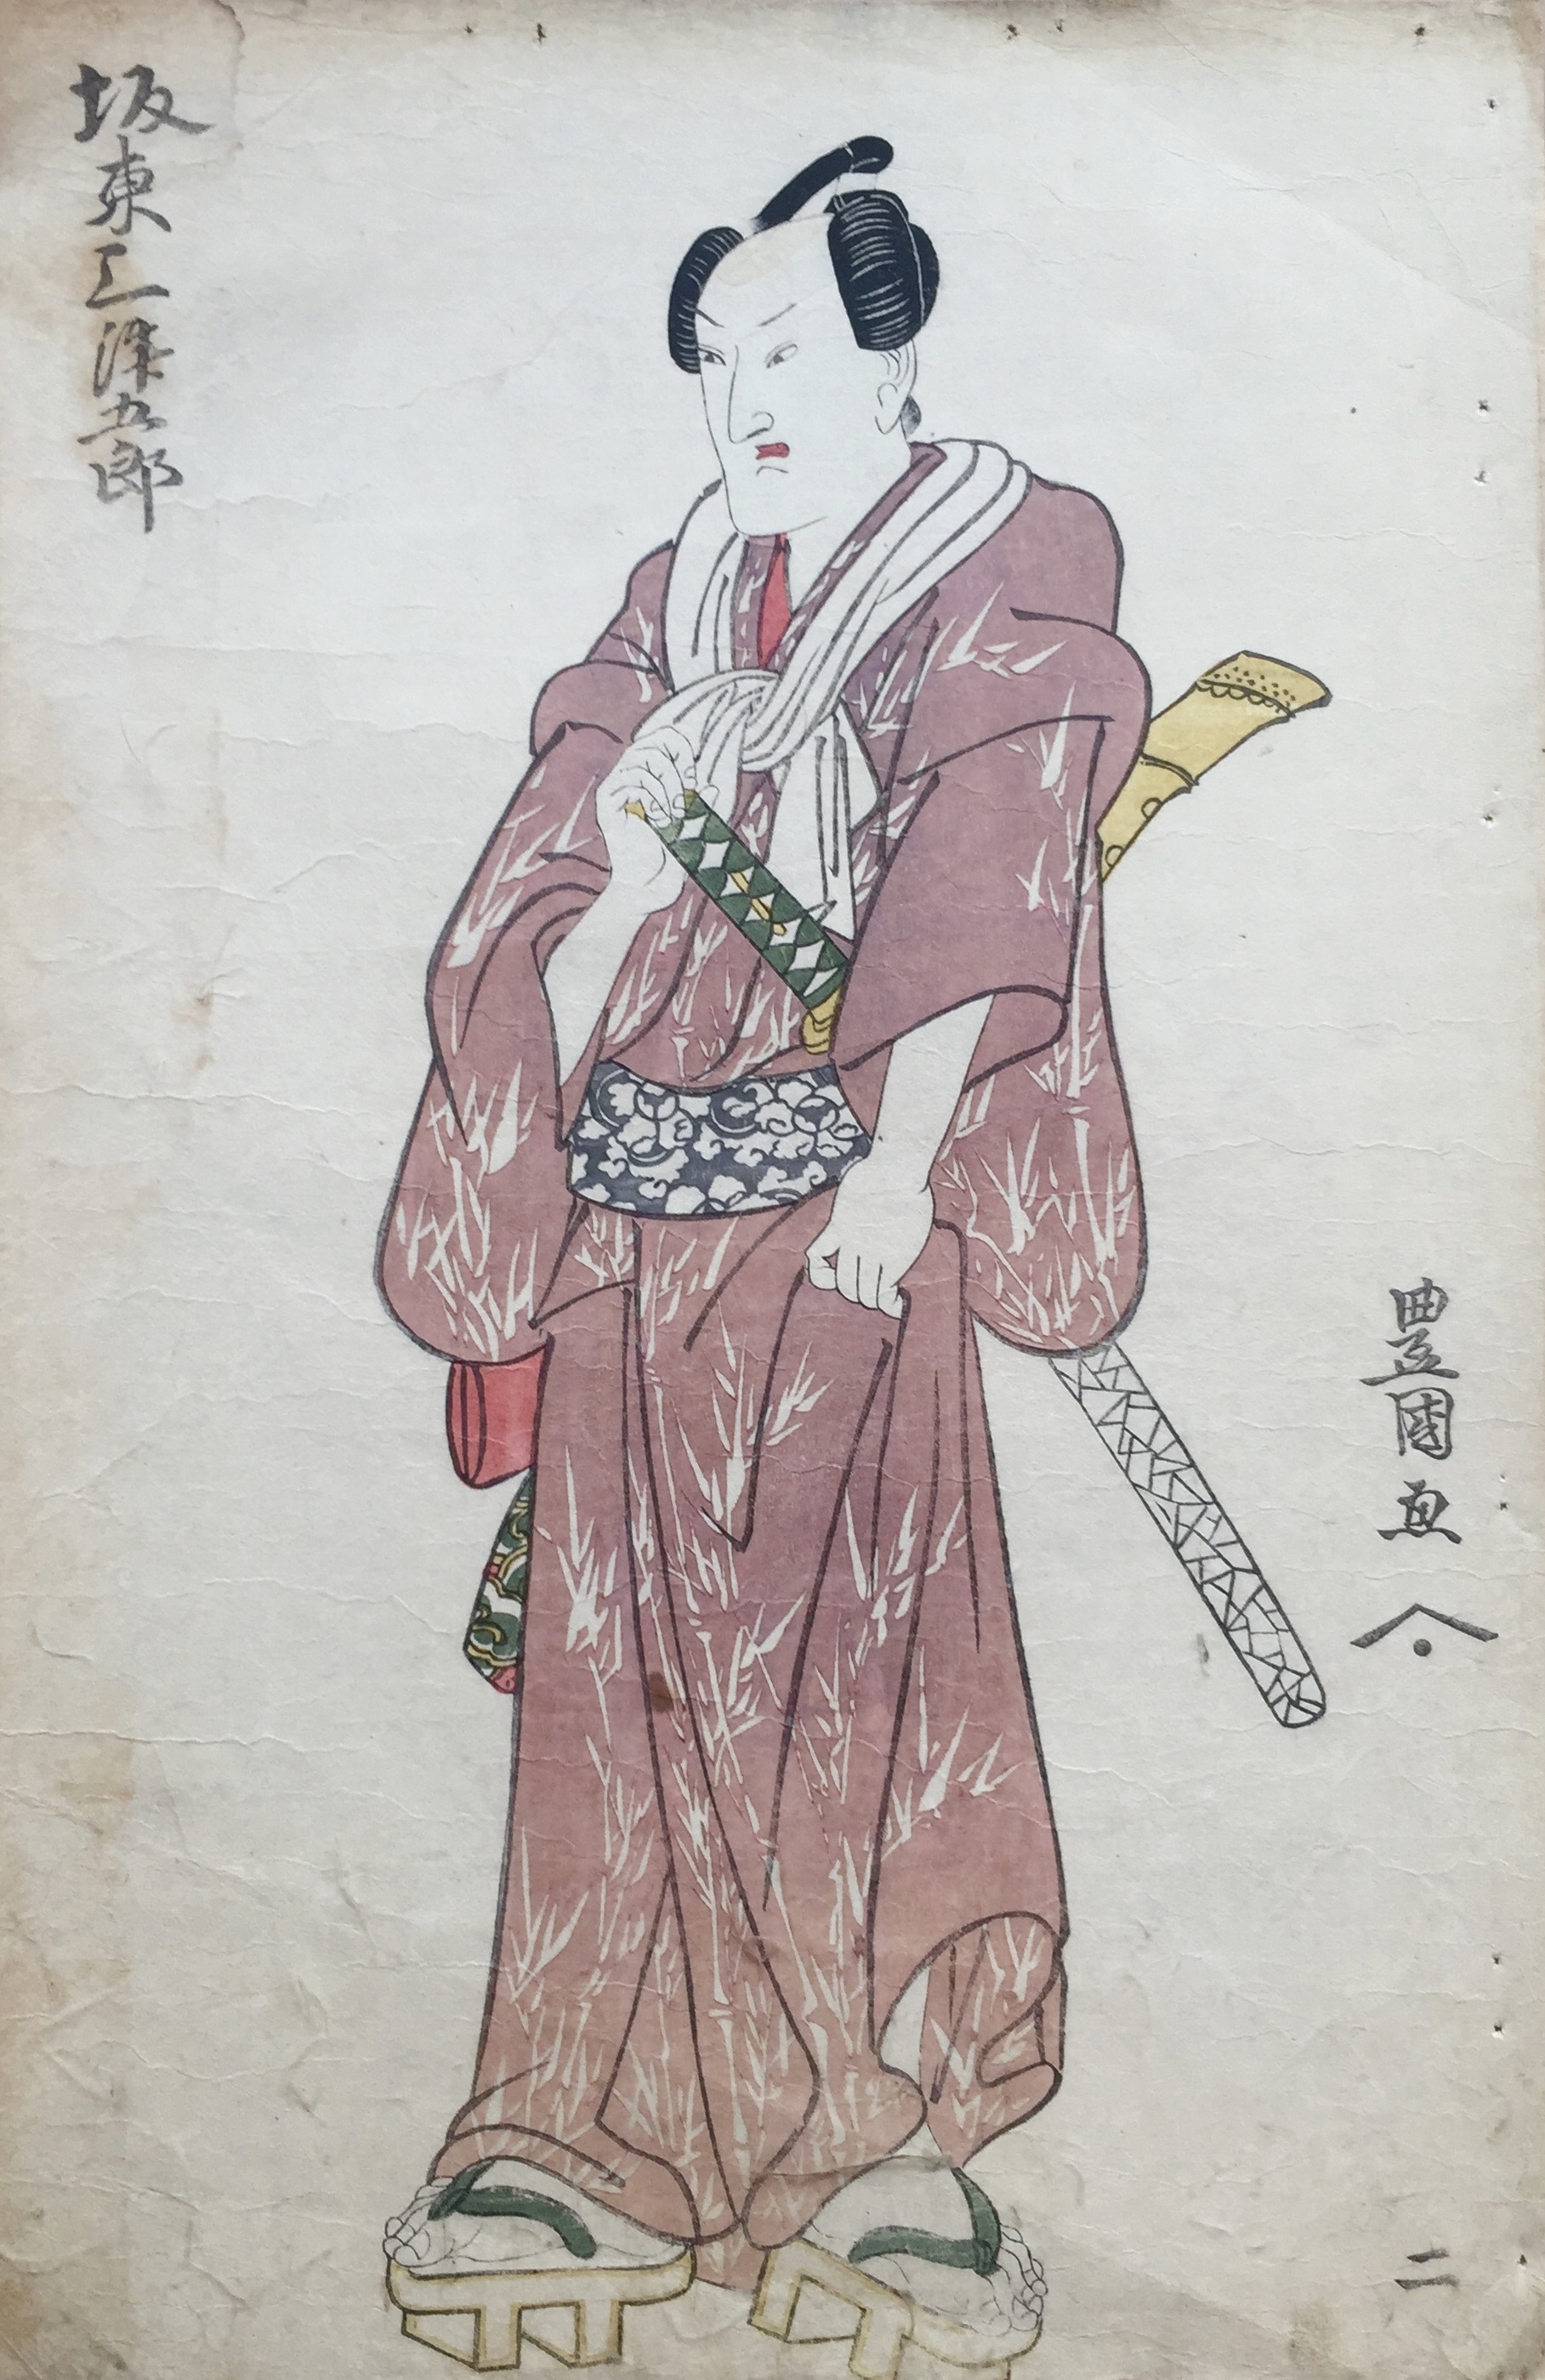 UTAGAWA Toyokuni, dit TOYOKUNI I